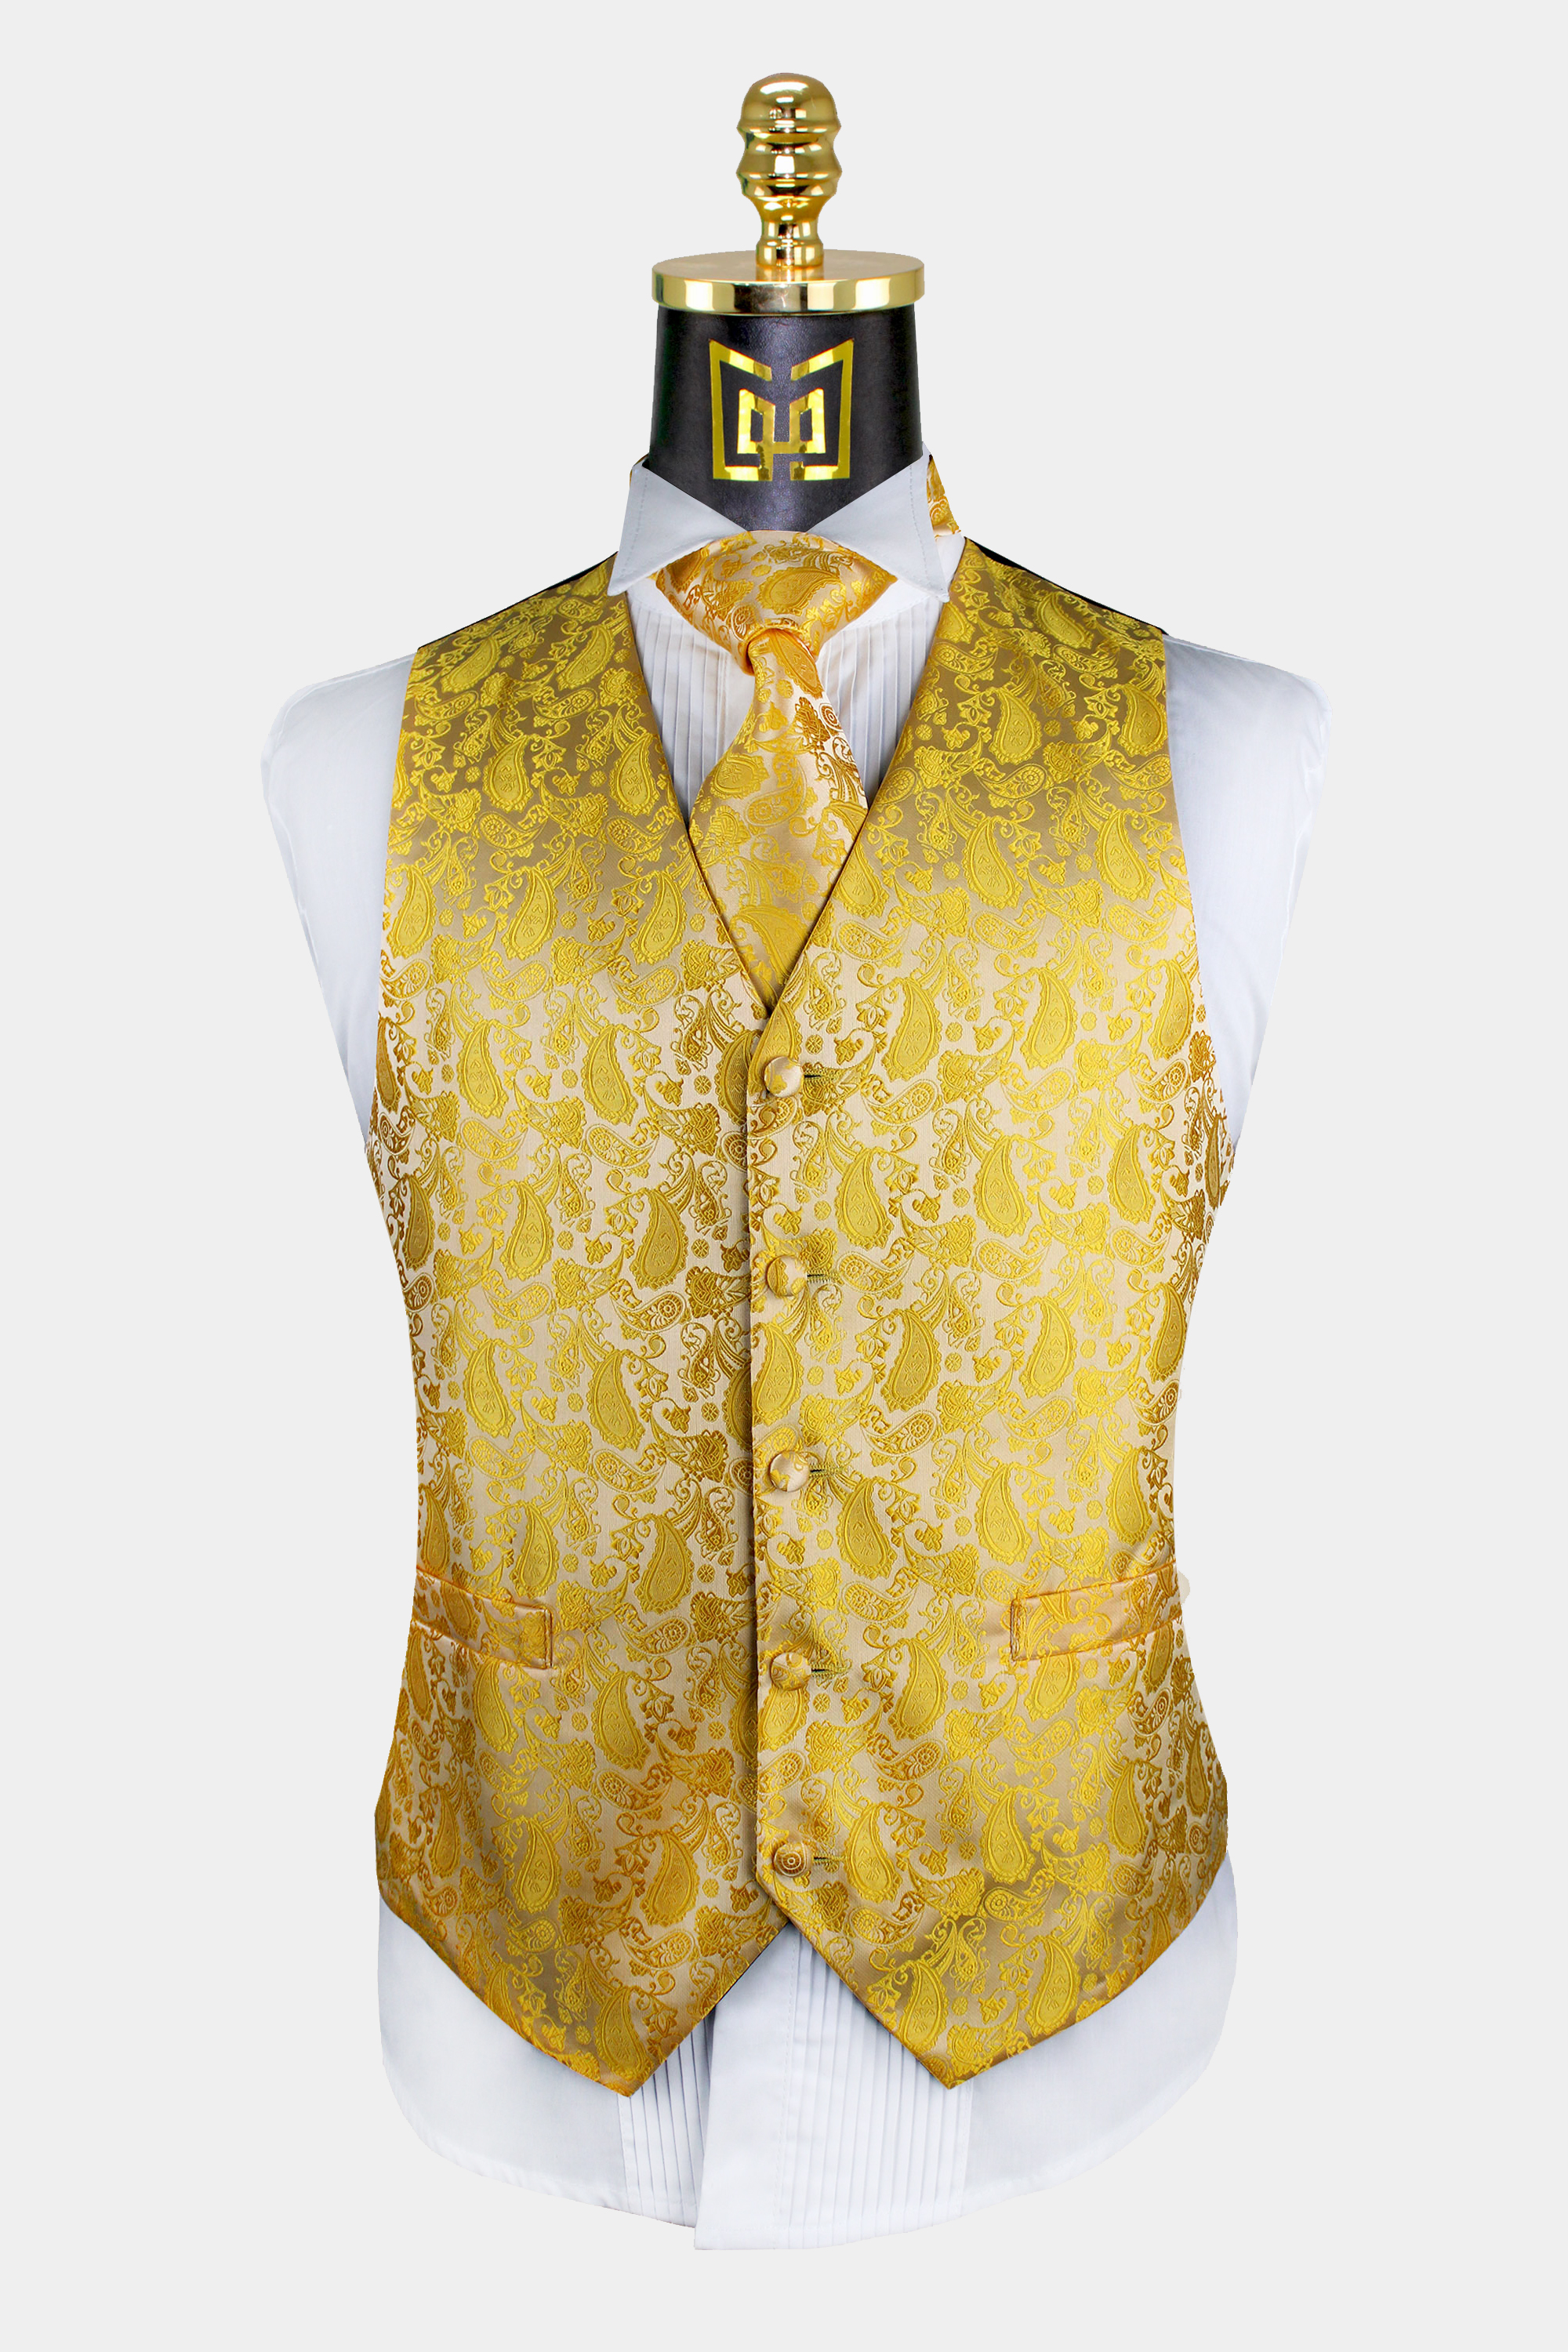 Gold-Paisley-Vest-and-Tie-Set-Groom-Wedding-Tuxedo-Verst-from-Gentlemansguru.com_